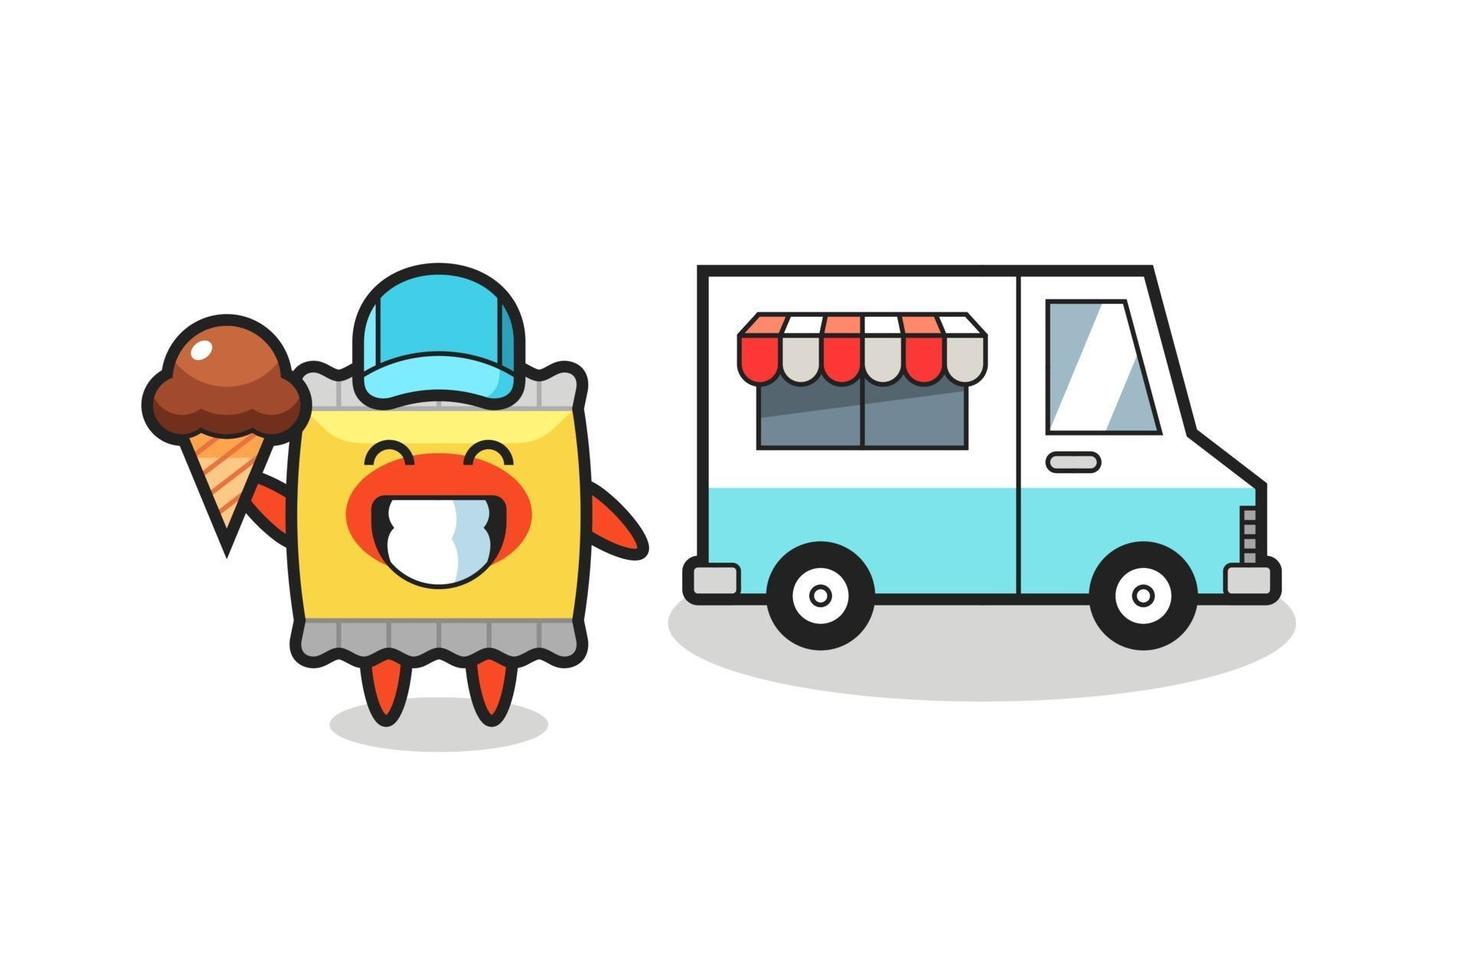 mascota, caricatura, de, merienda, con, helado, camión vector